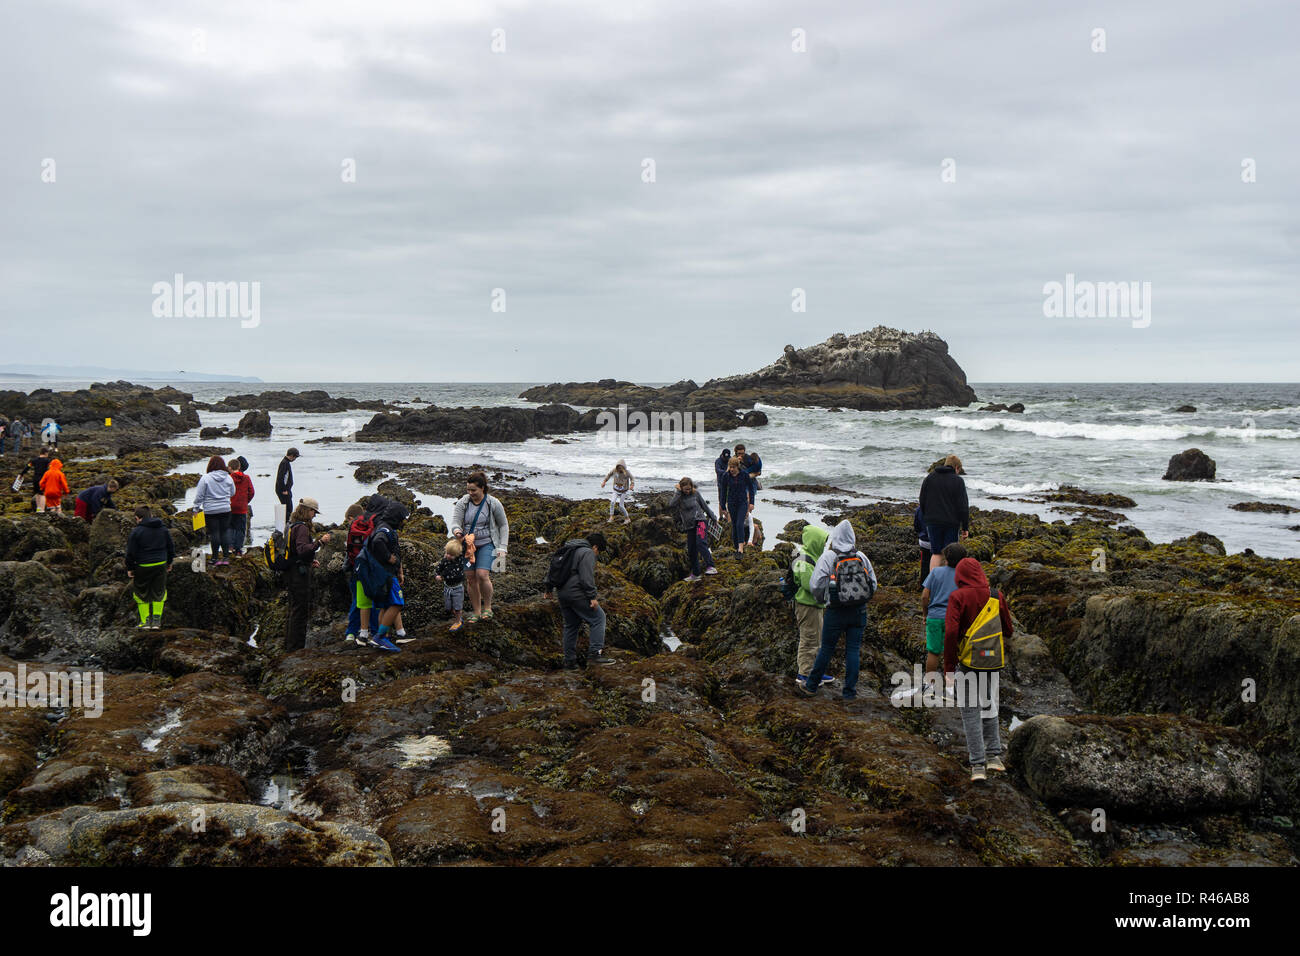 Schoolkids en un centro educativo viaje para descubrir las pozas la vida del mar con el Rangers en la playa de guijarros, Yaquina Jefe de Área Natural sobresaliente, Oregón Foto de stock